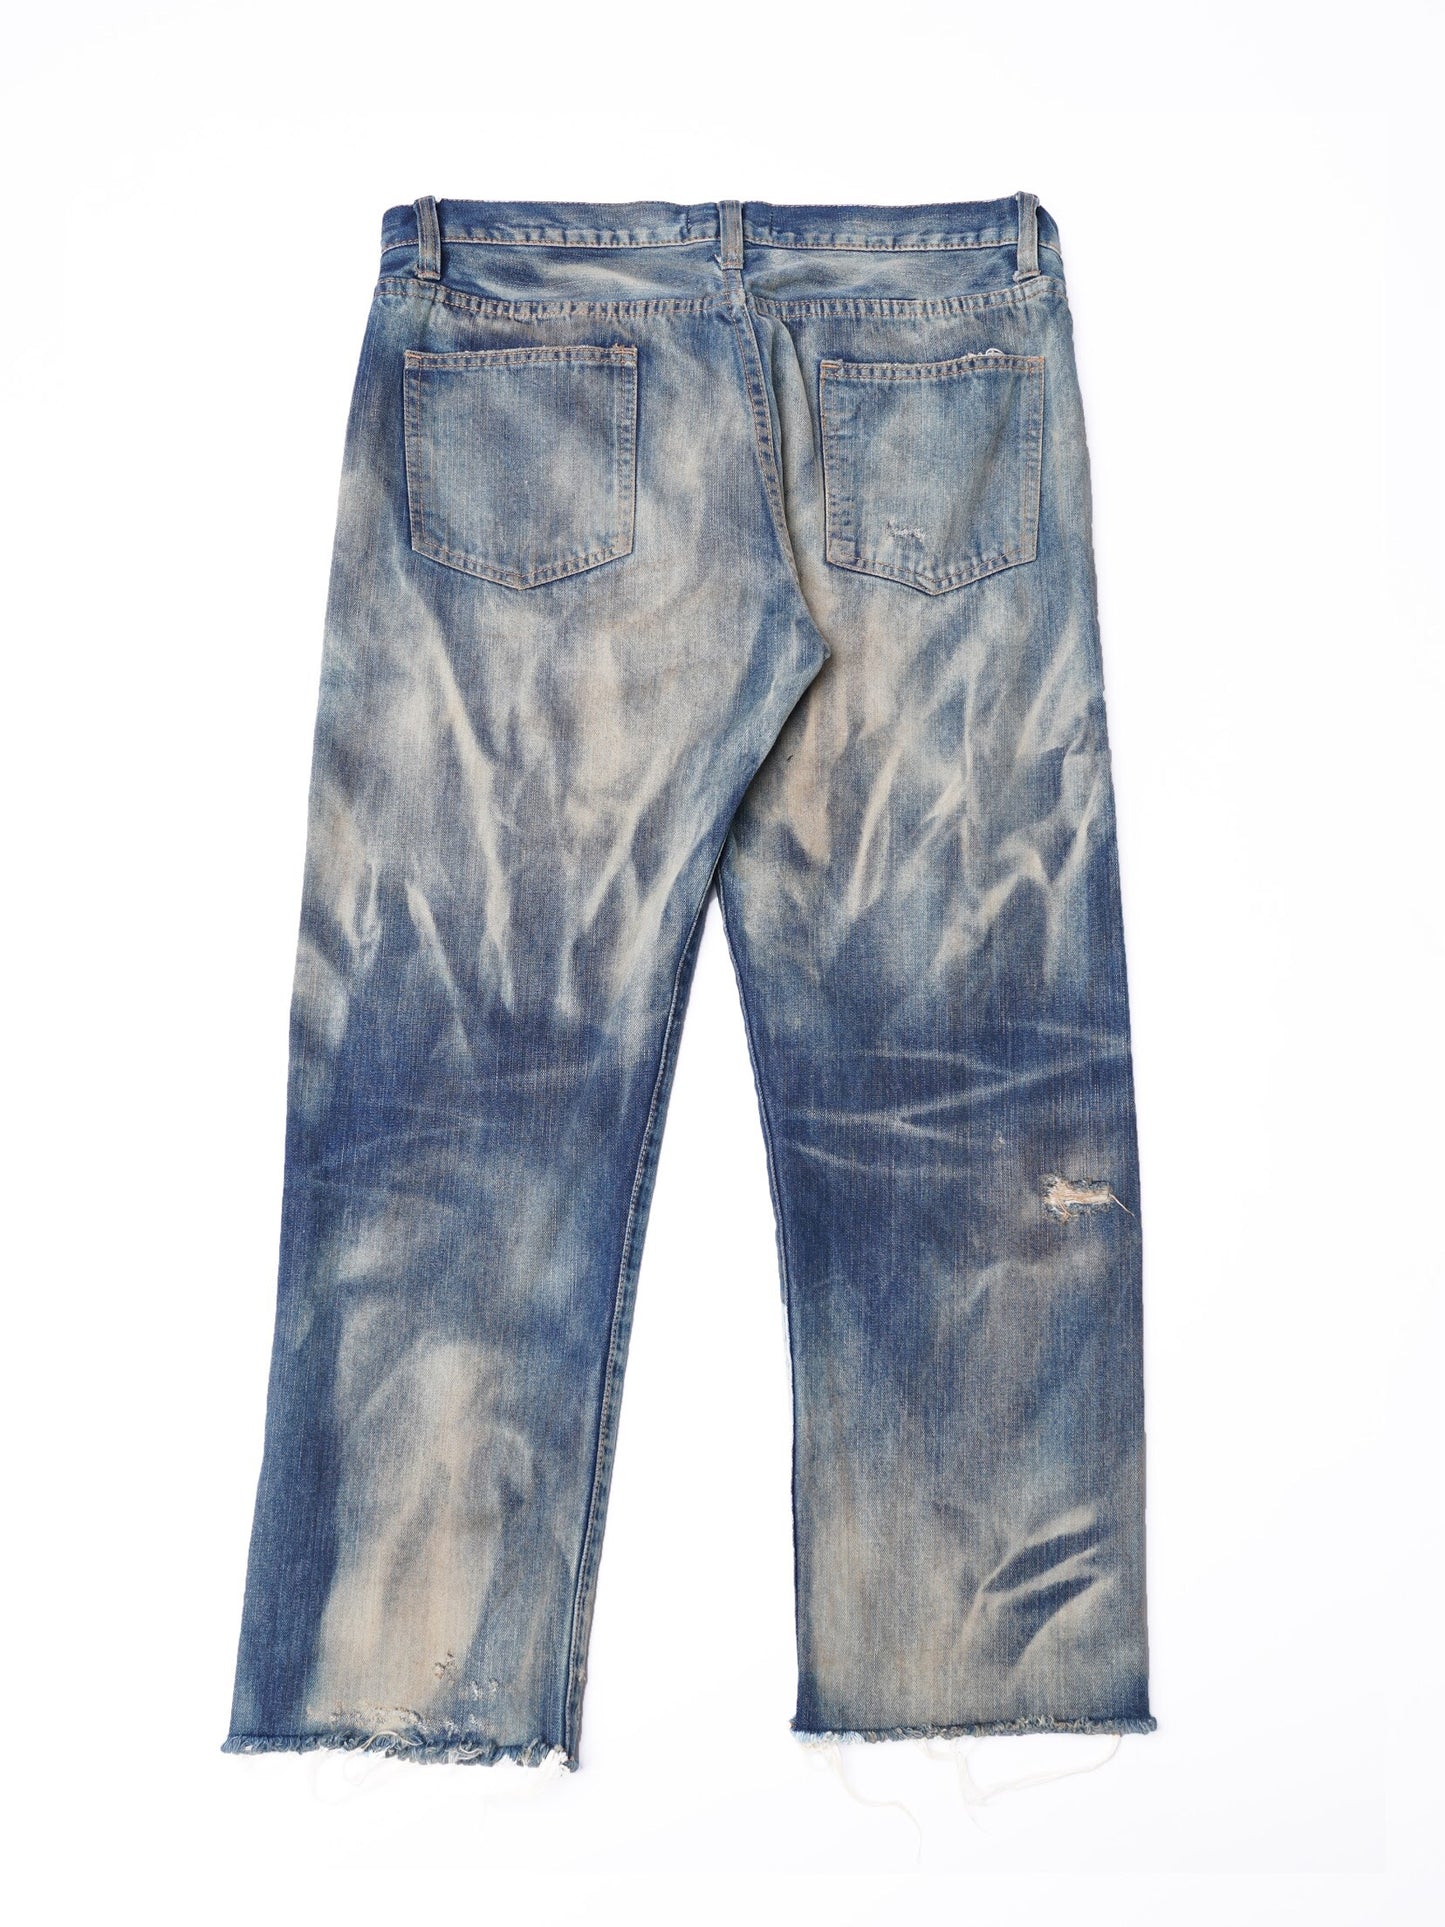 【訂製】No.32 Nevada Coal-mine Jeans